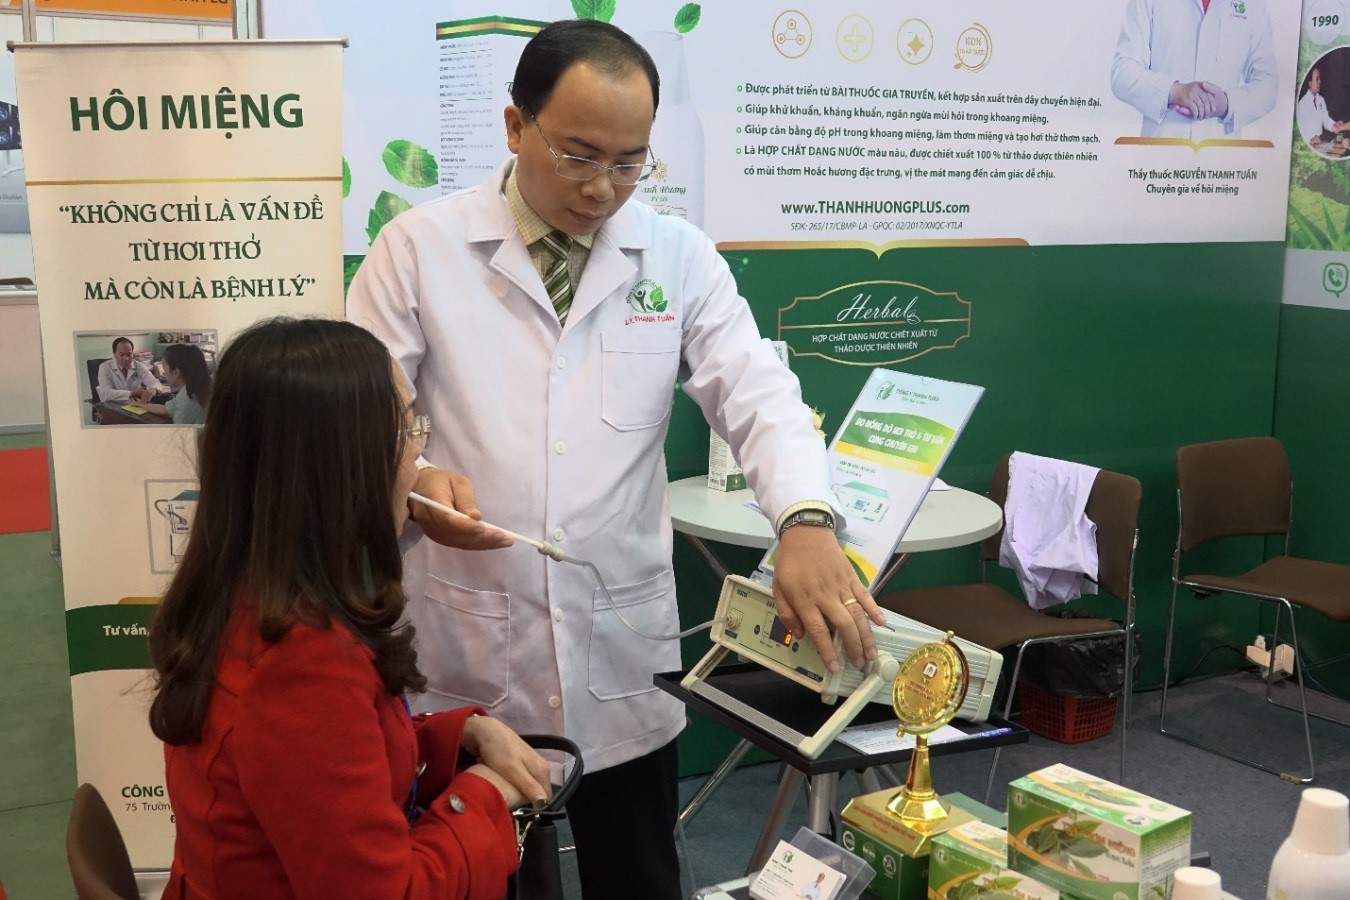 Thầy thuốc Nguyễn Thanh Tuấn đo nồng độ hôi miệng cho bệnh nhân ở xa